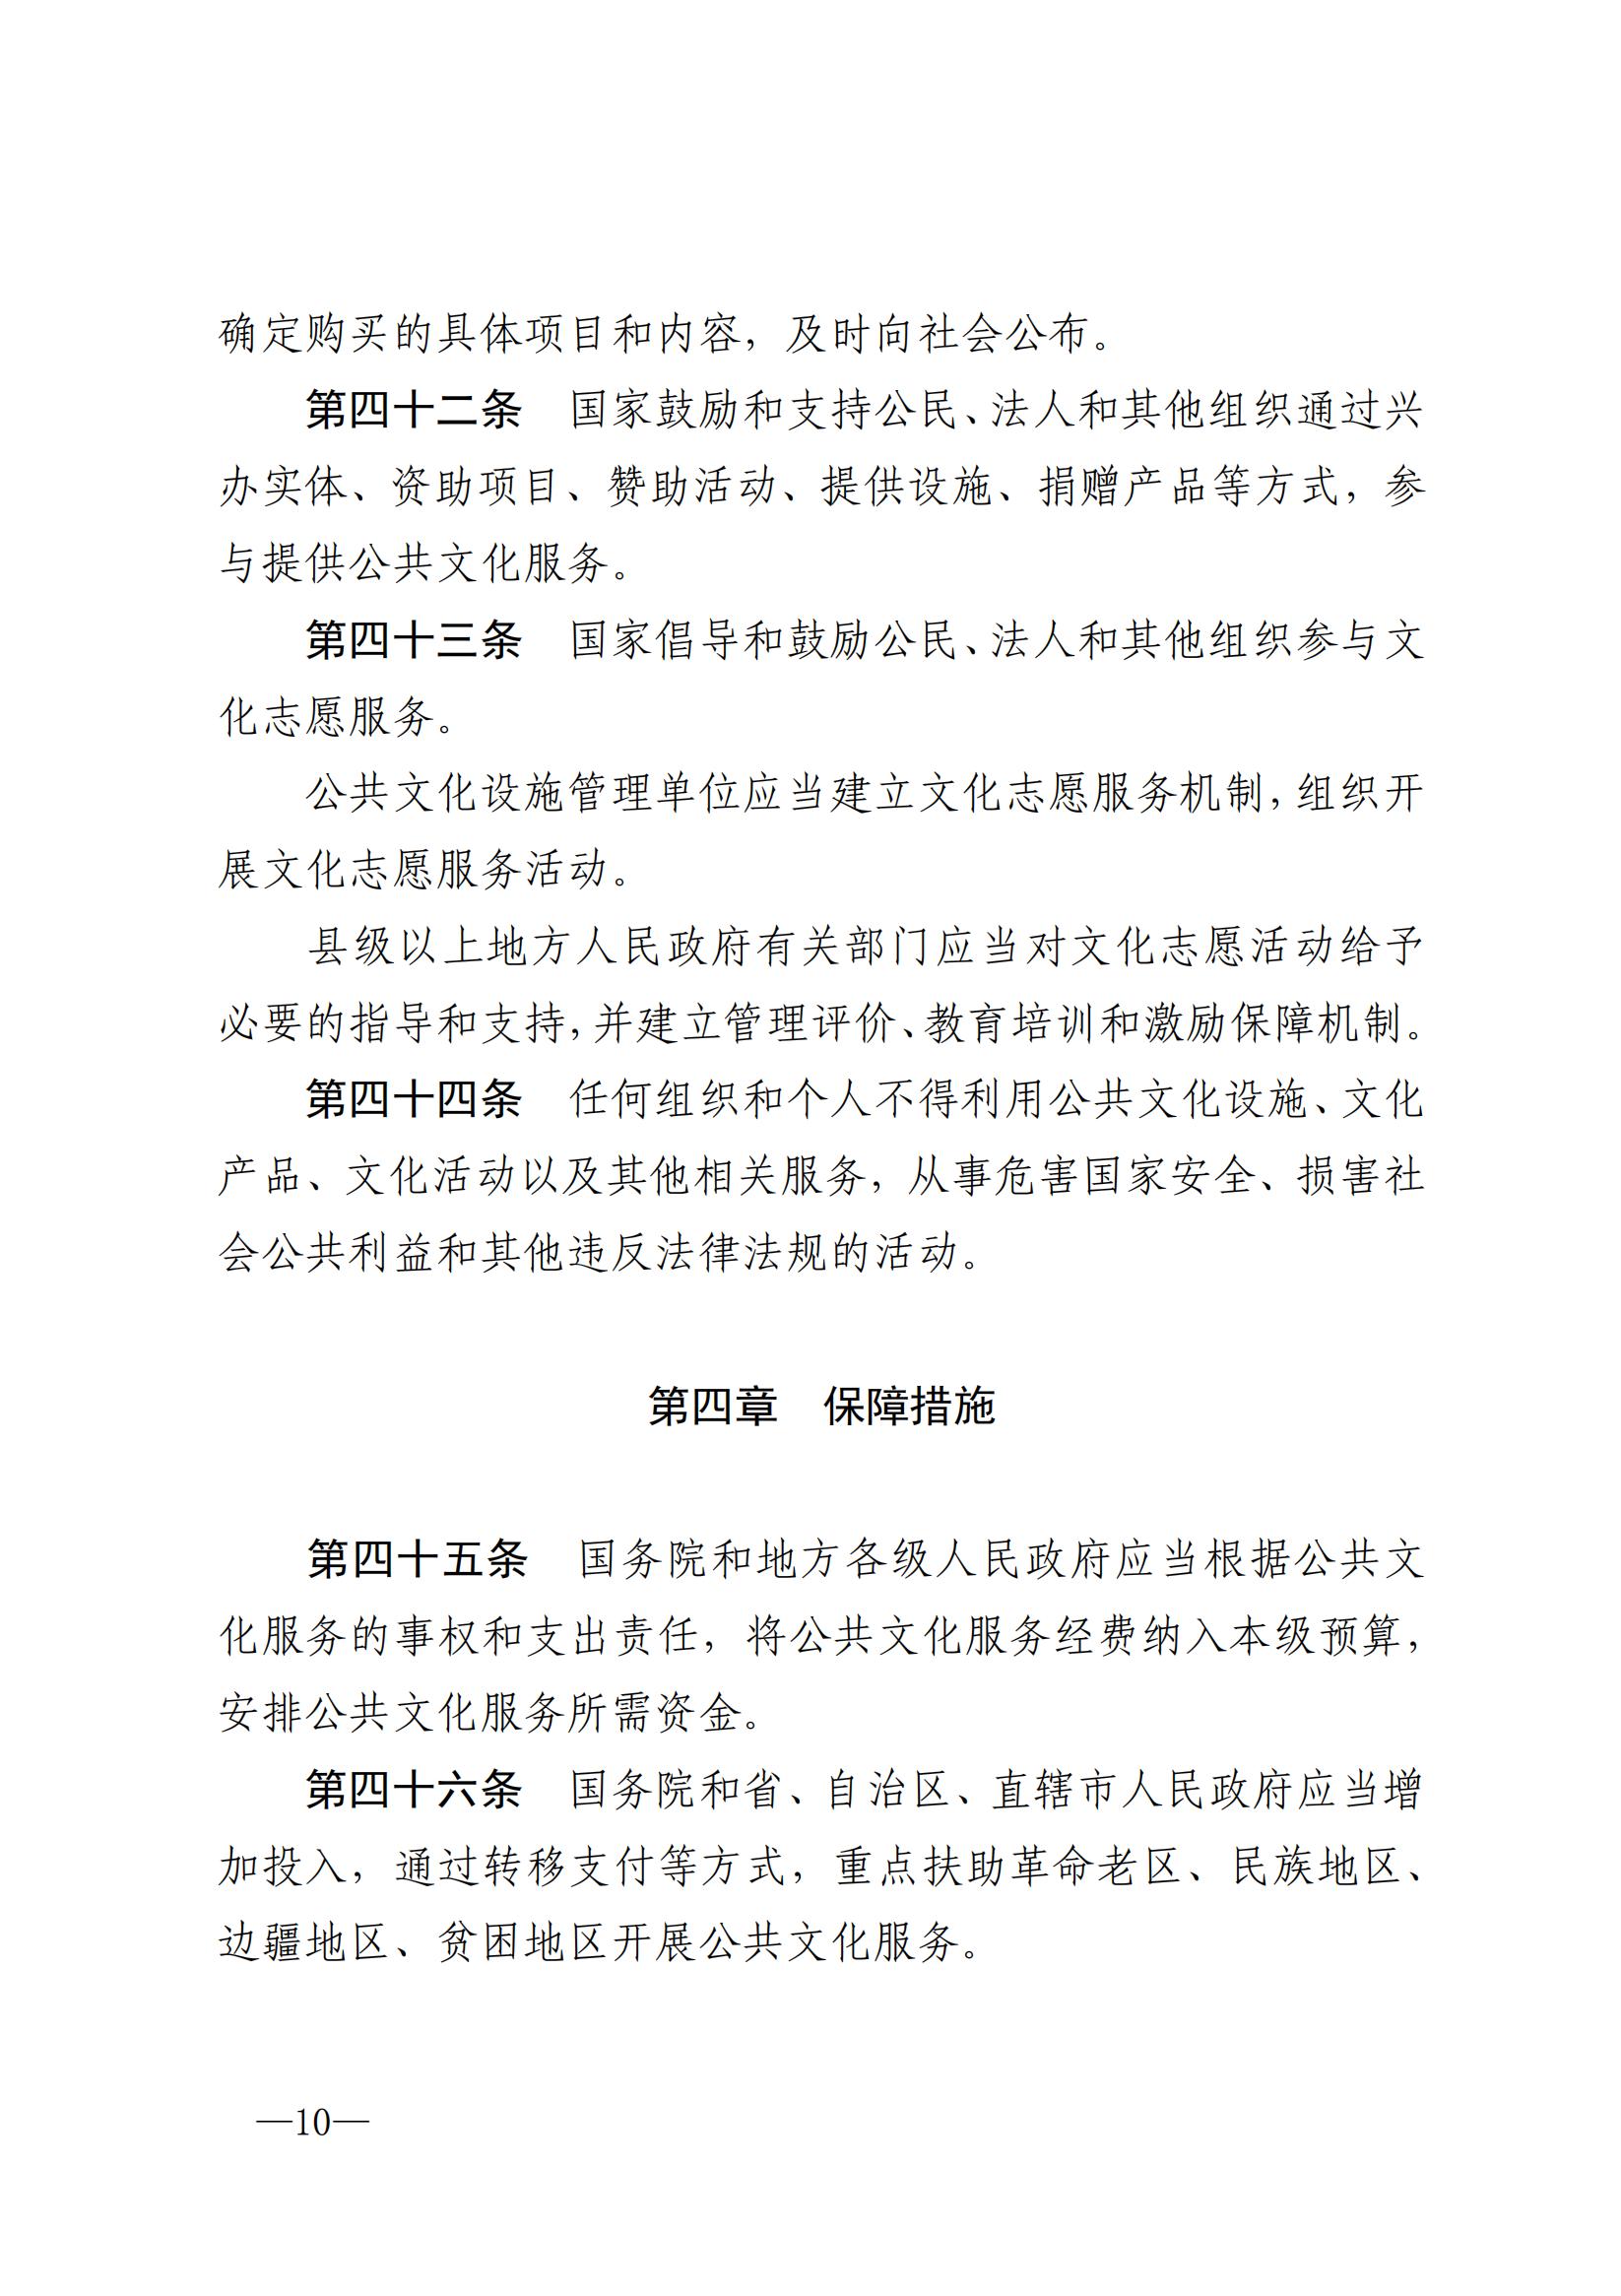 中华人民共和国公共文化服务保障法_09.jpg